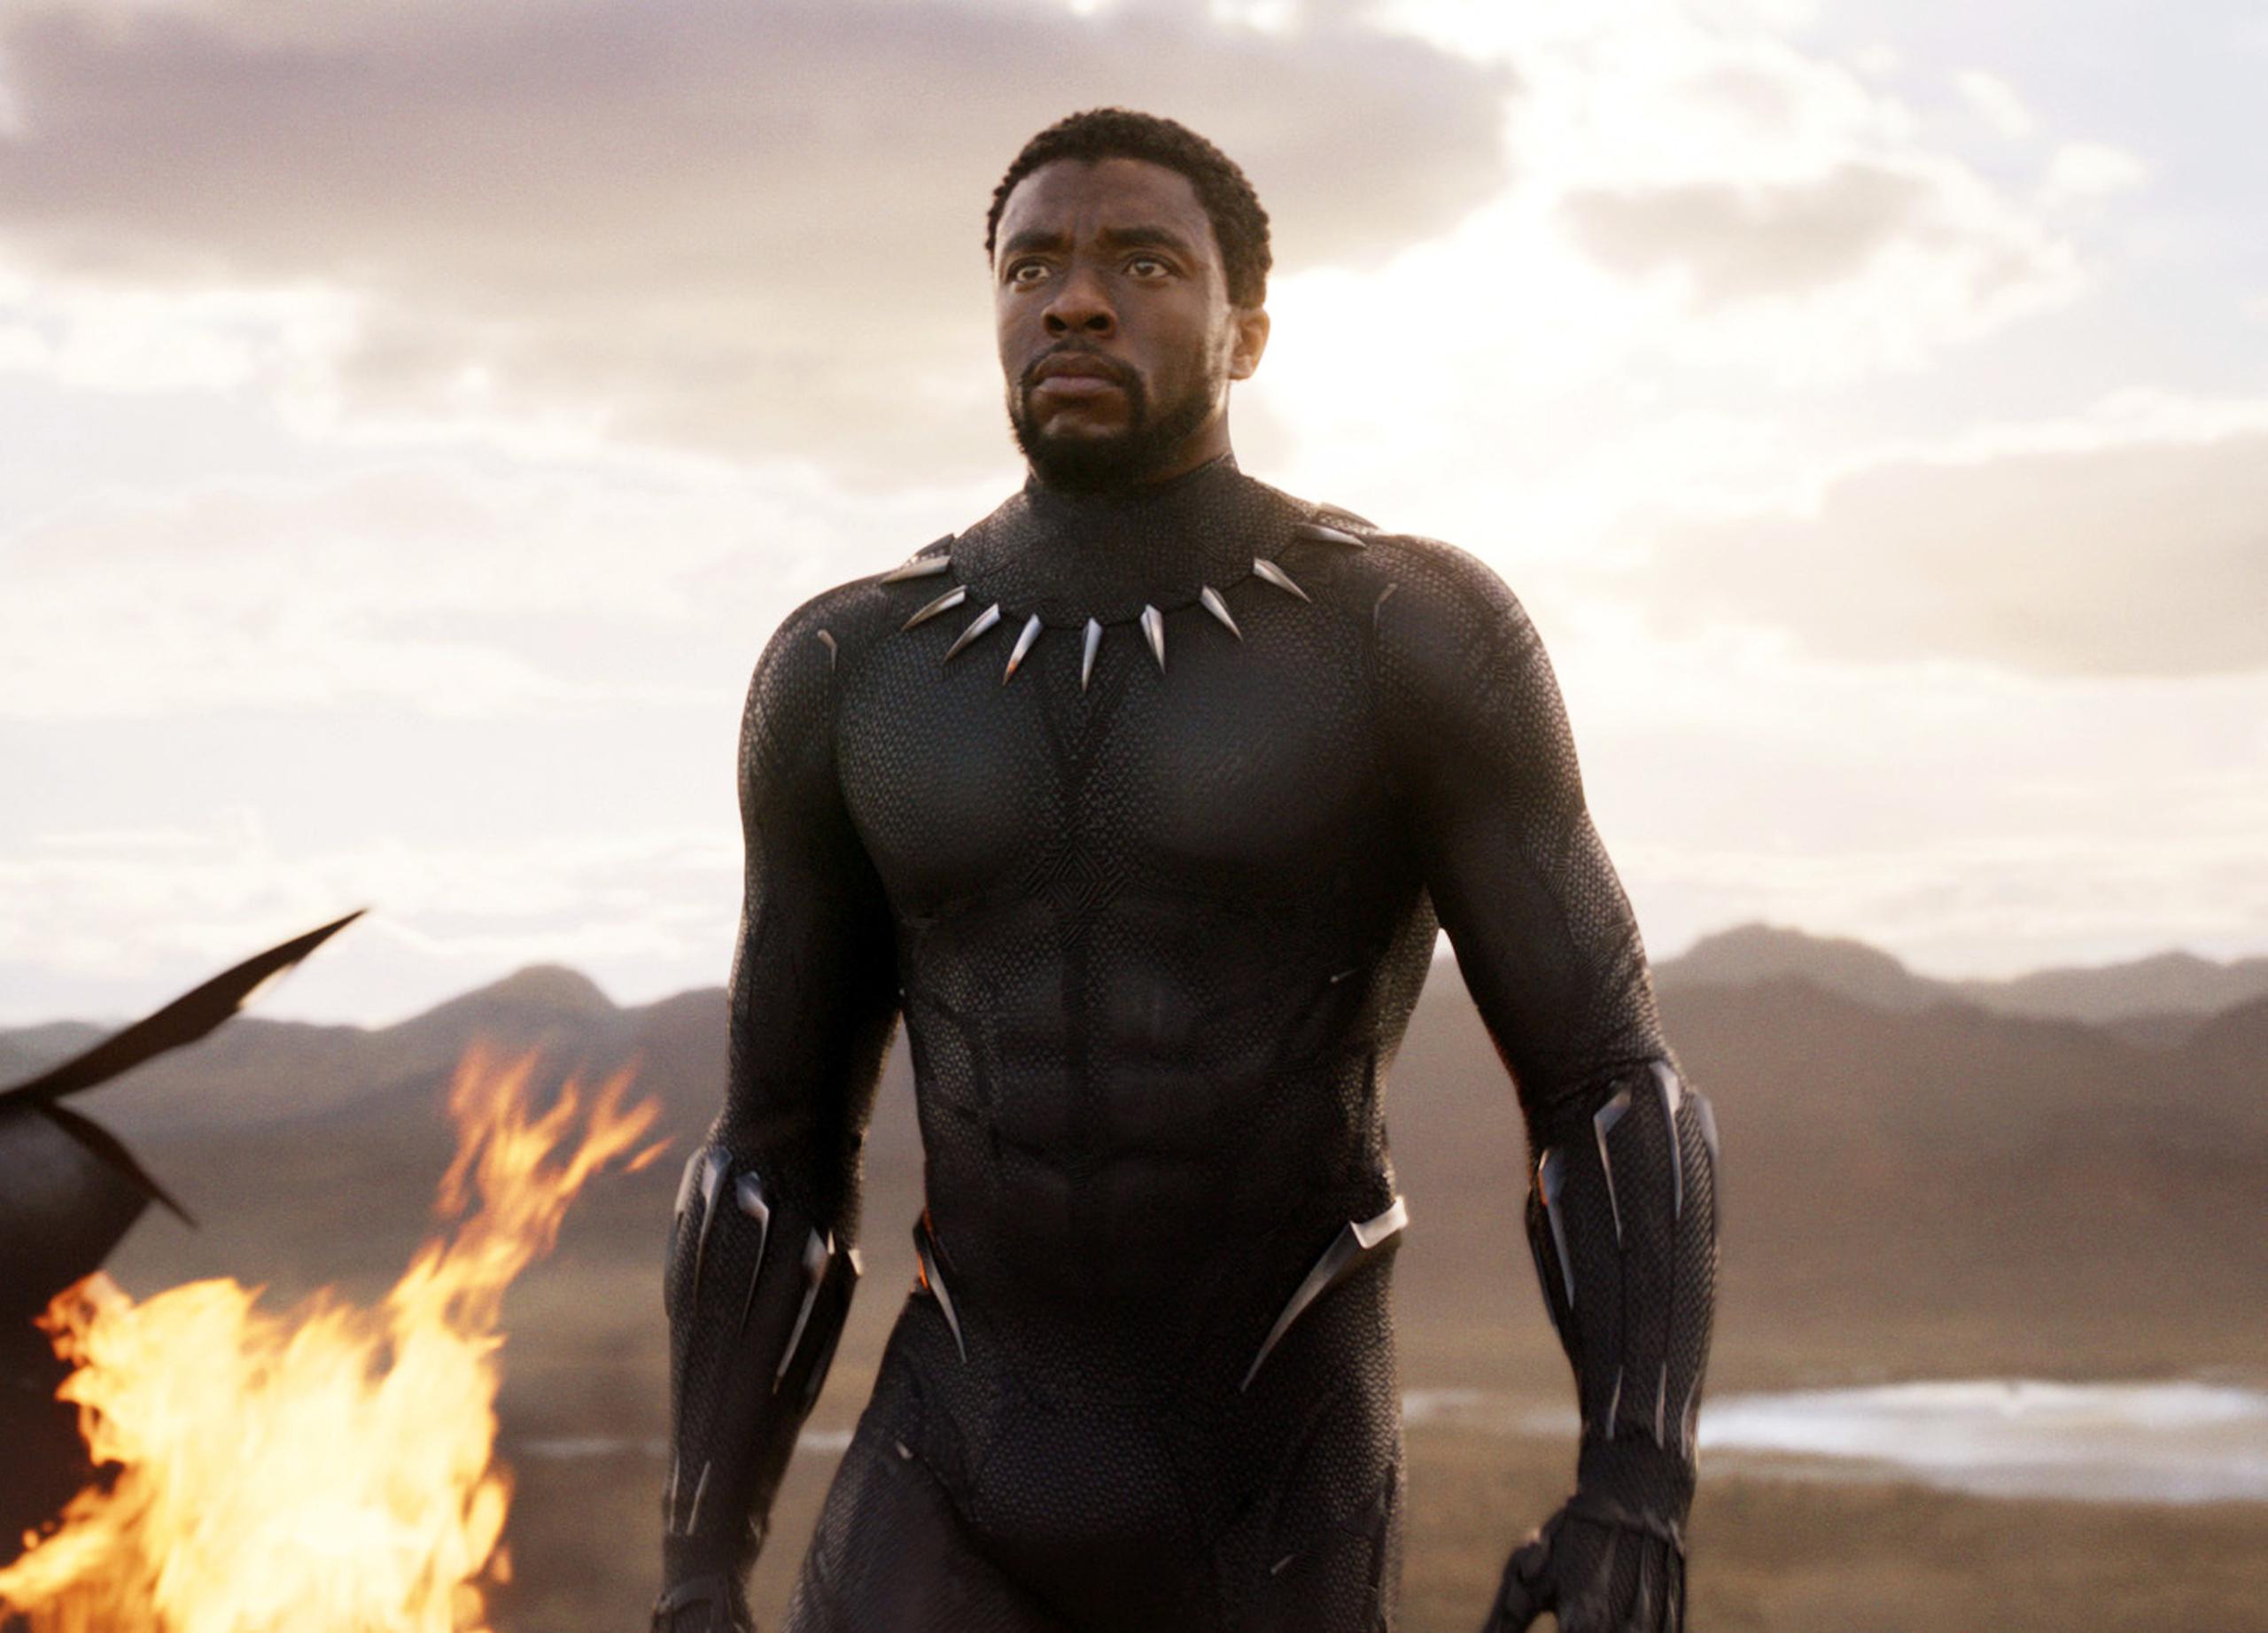 En 2018, Boseman entró en la piel de T'Challa en "Black Panther", una de las películas más taquilleras del universo cinematográfico de los estudios Marvel.